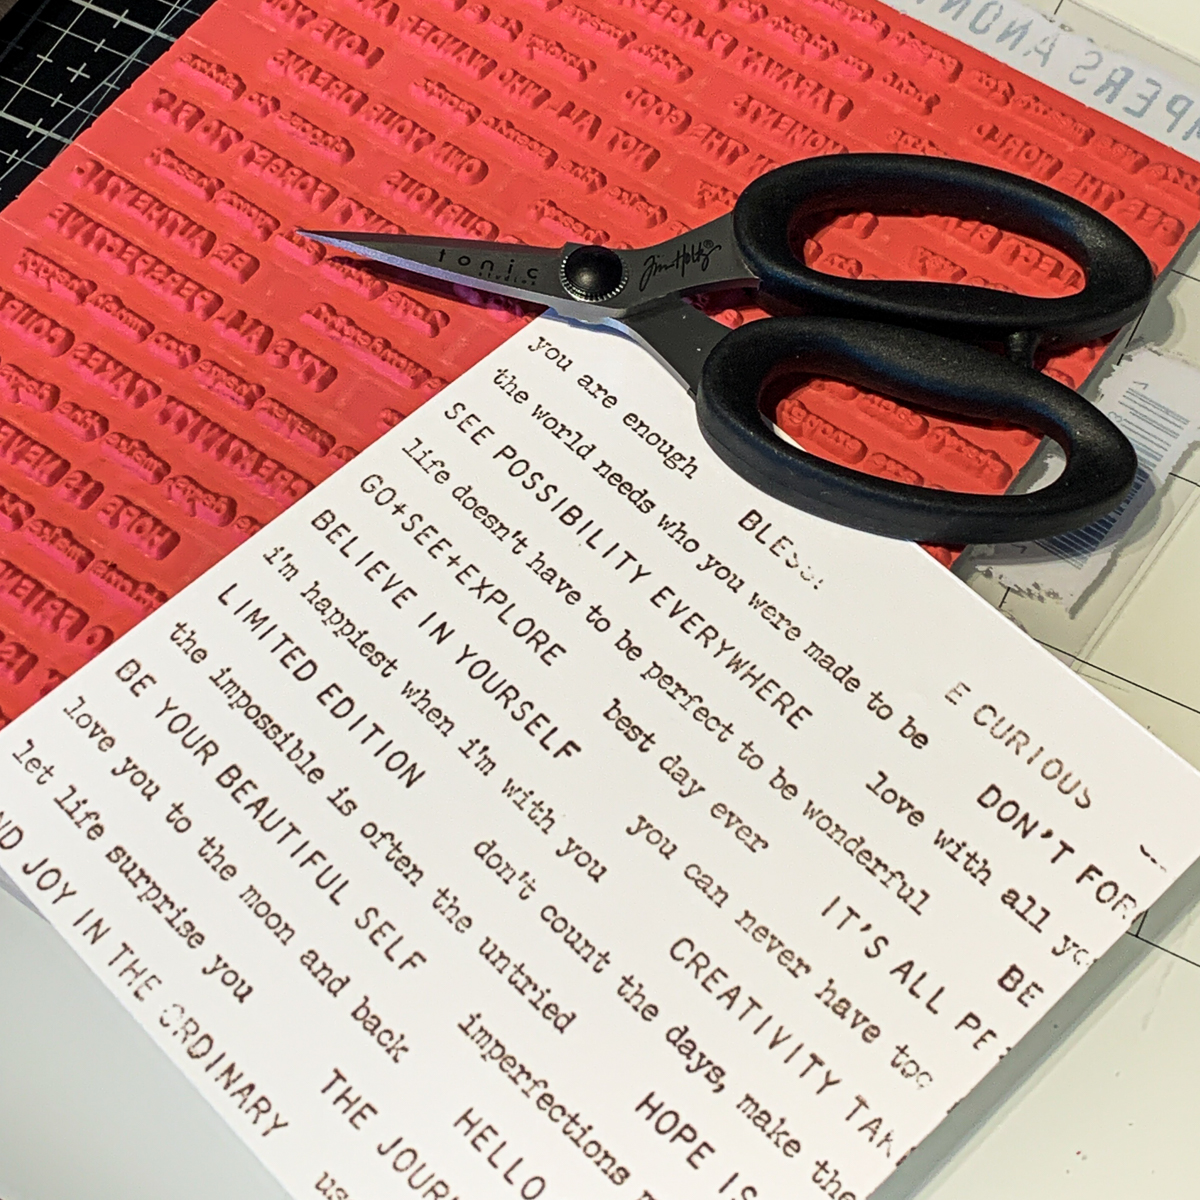 Stampers Anonymous Tiny Text / Tonic Studio scissors